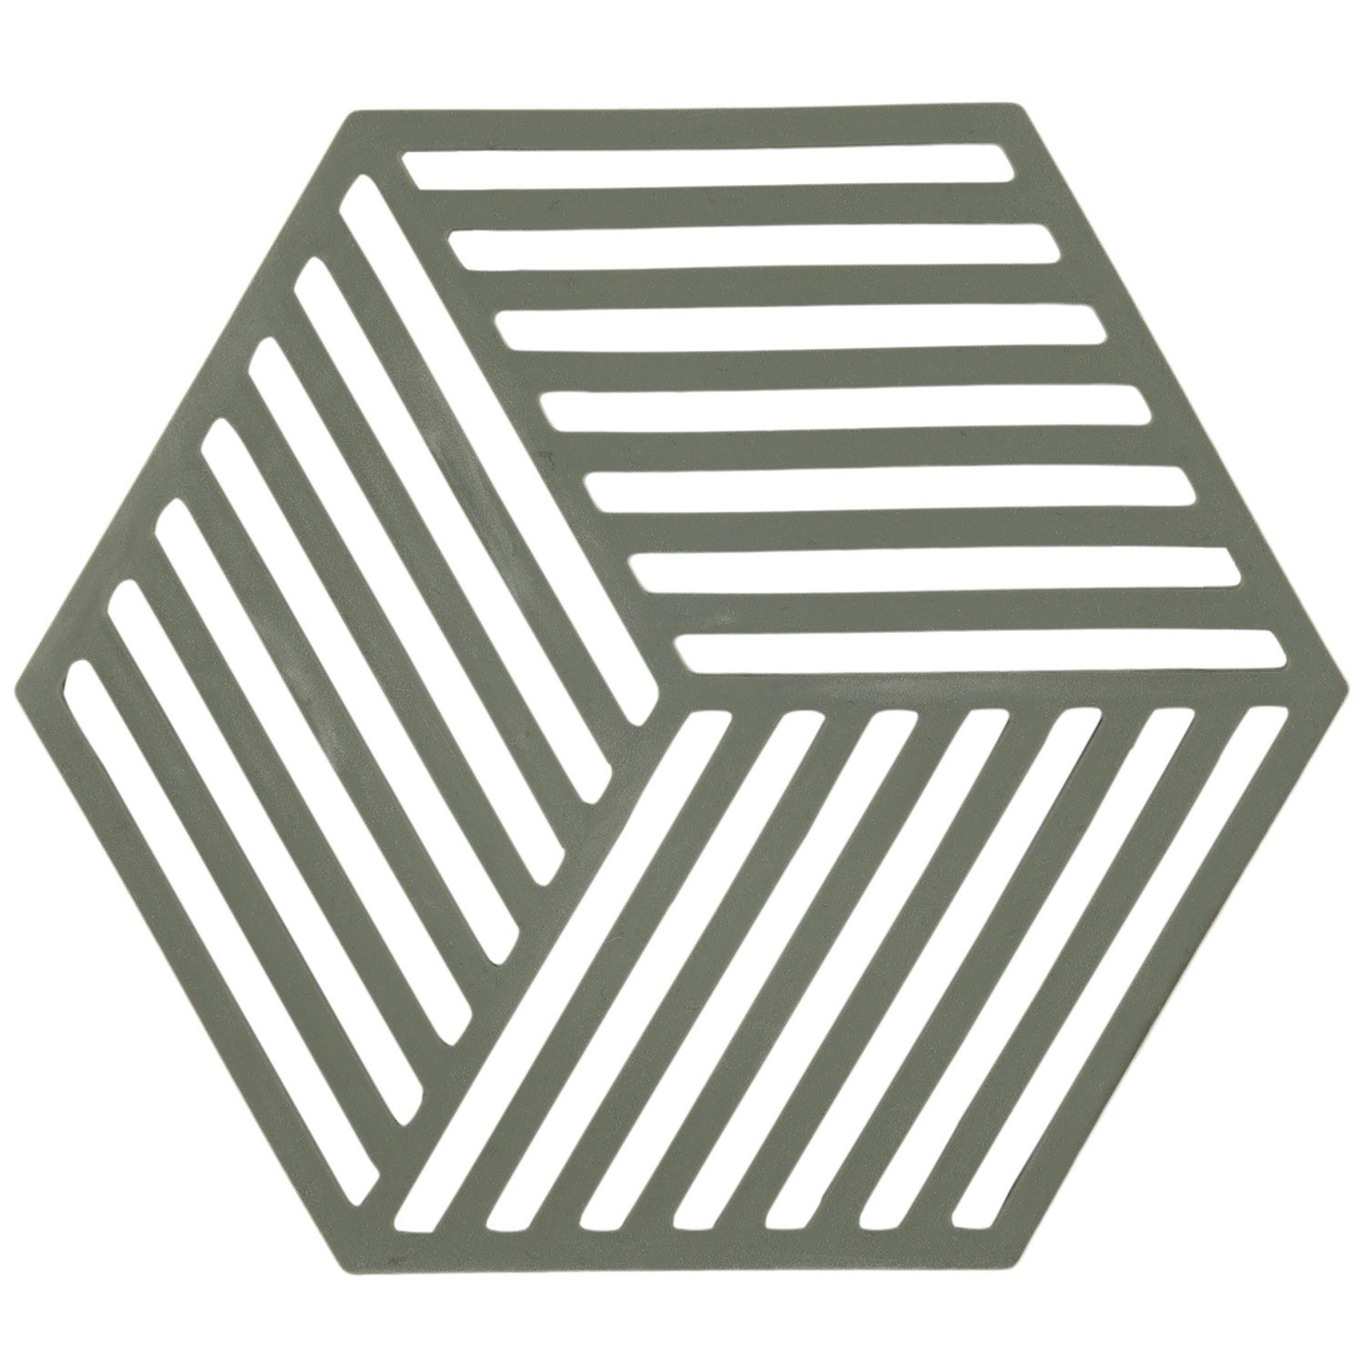 Hexagon Trivet Pannenonderzetter Olijfgroen